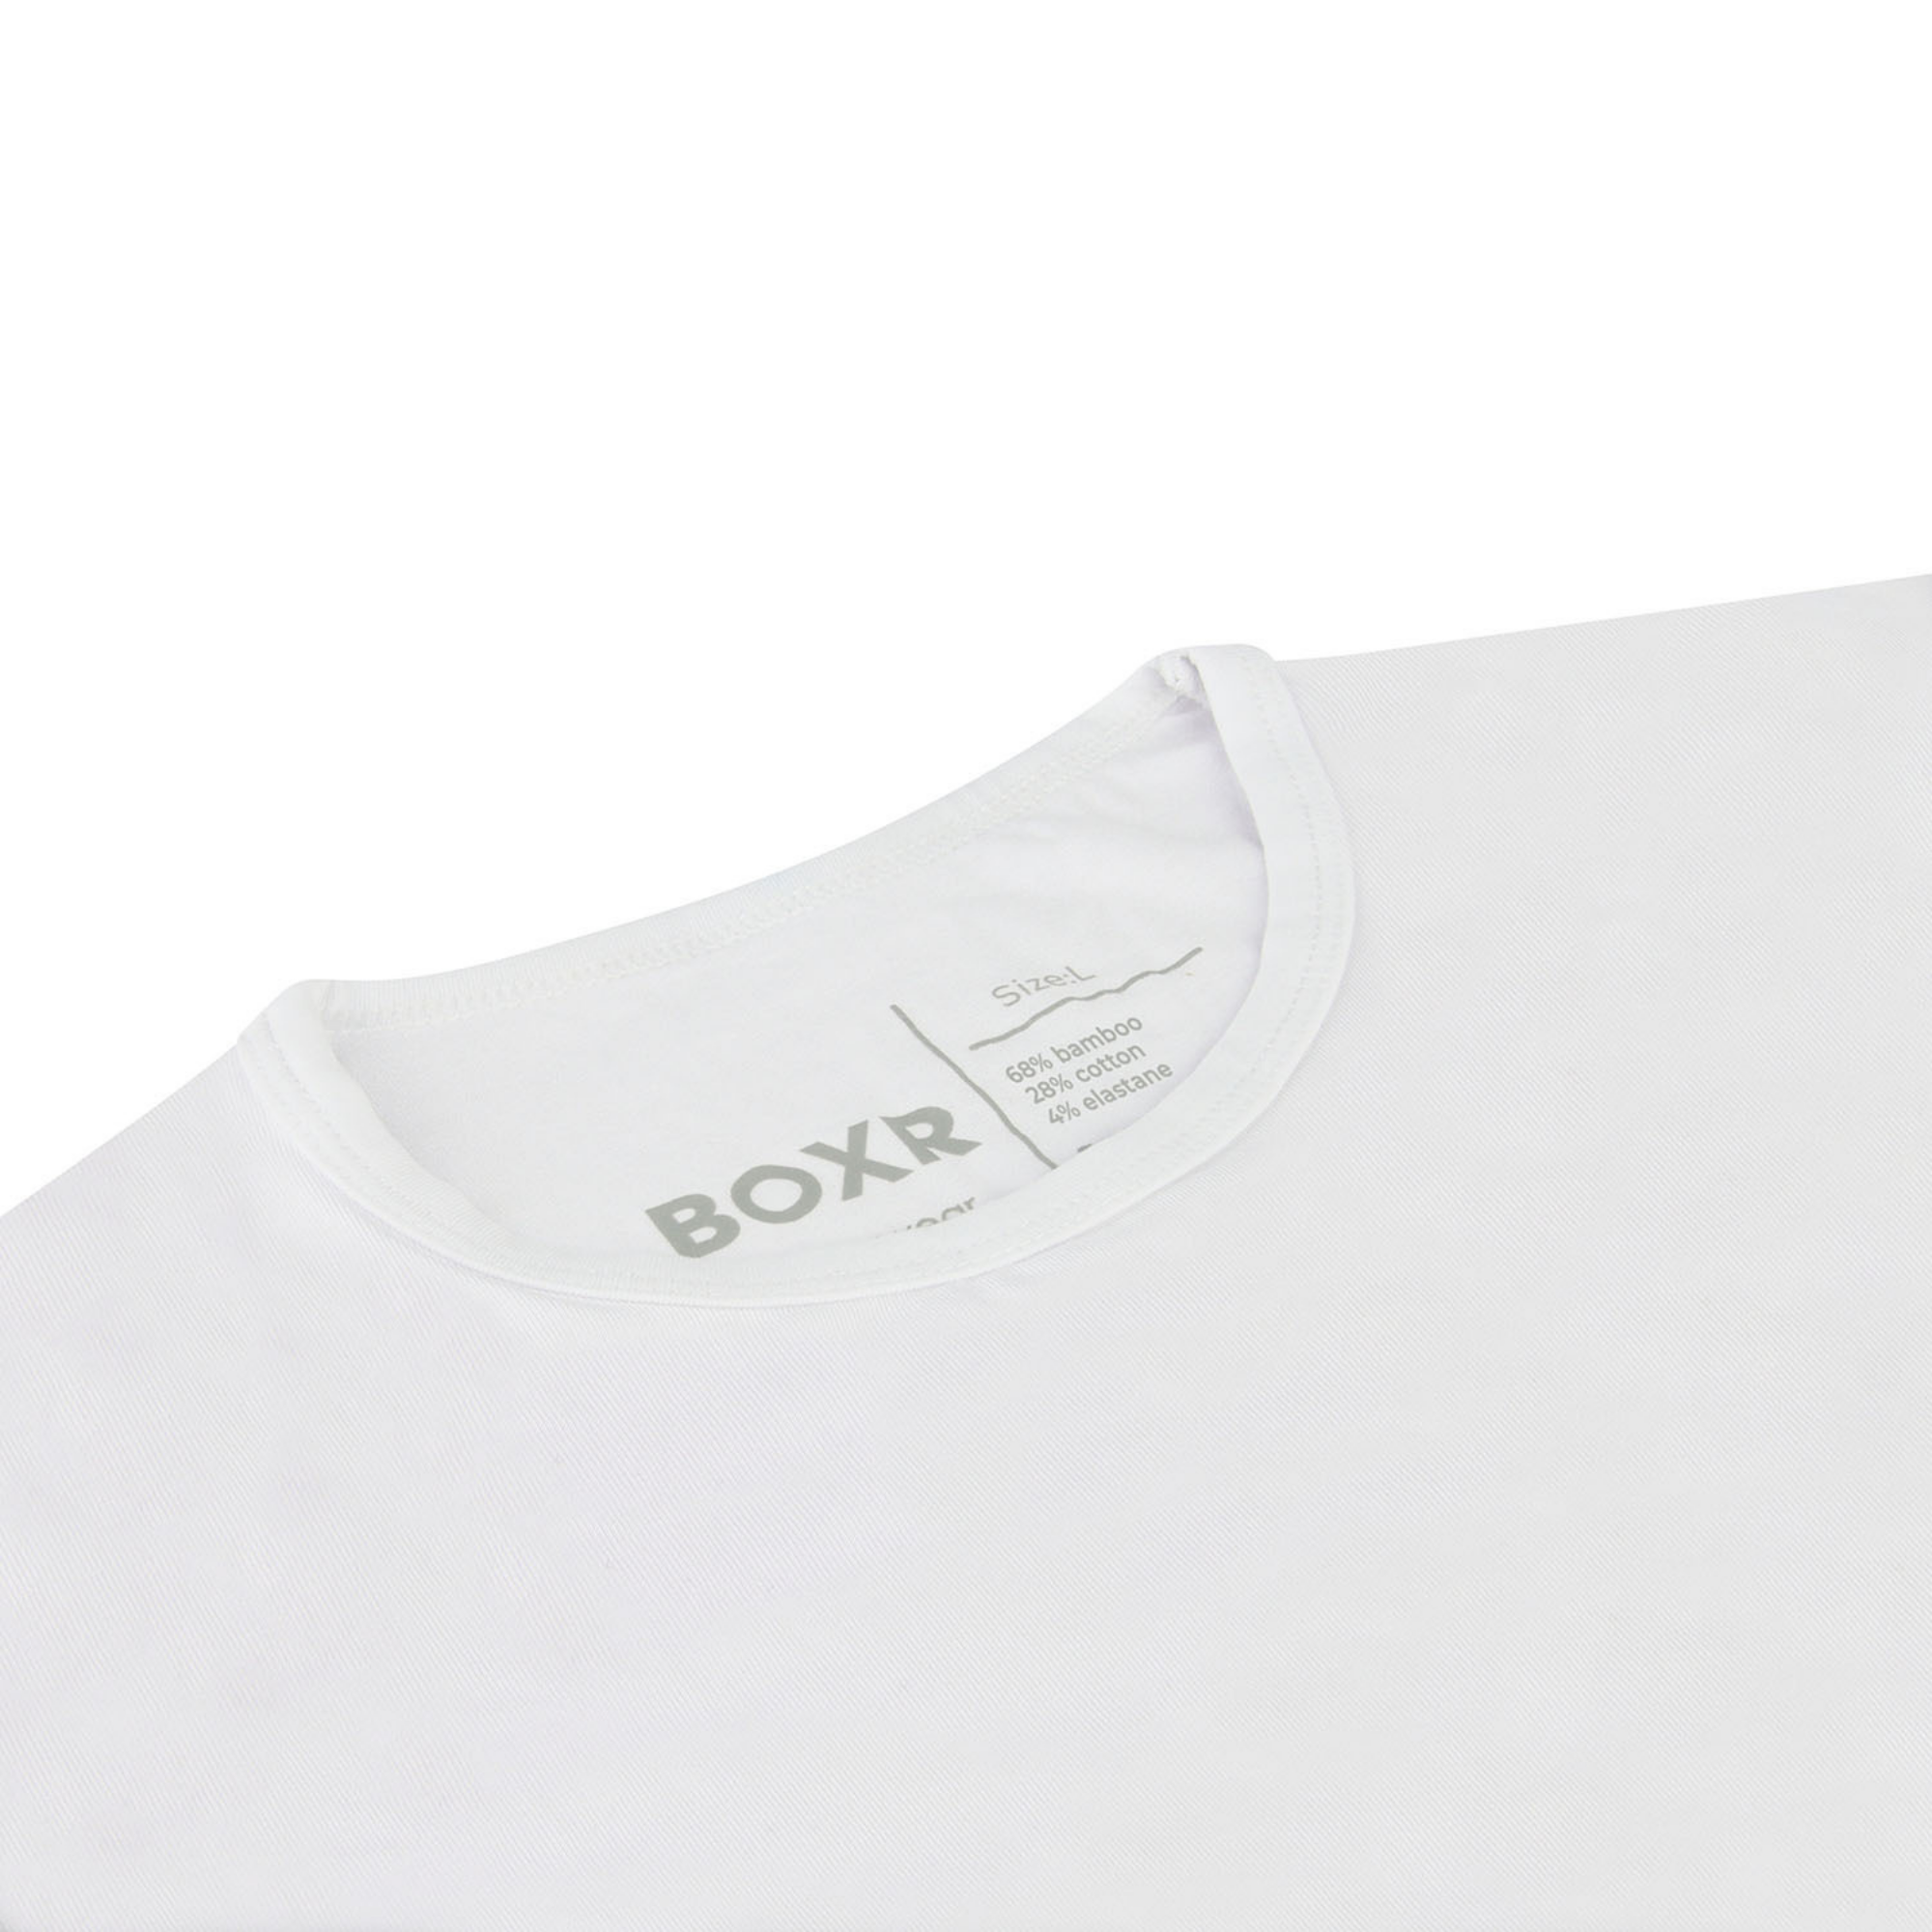 BOXR | T-shirt en bambou - Lot de 3 - Multicolore